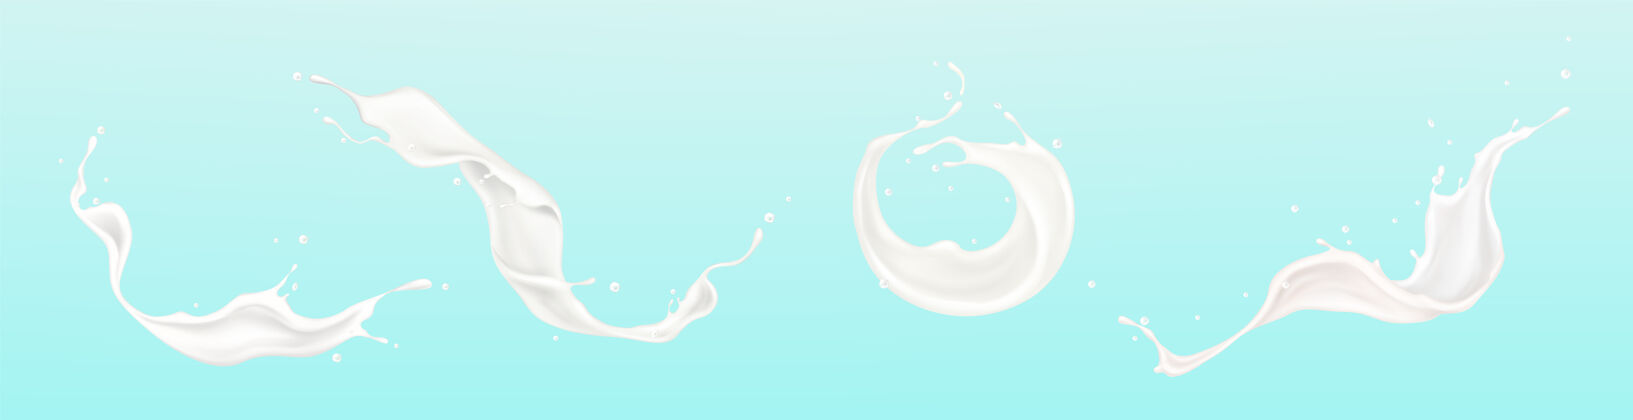 形状香草牛奶或白色油漆飞溅的插图集香草集卷曲